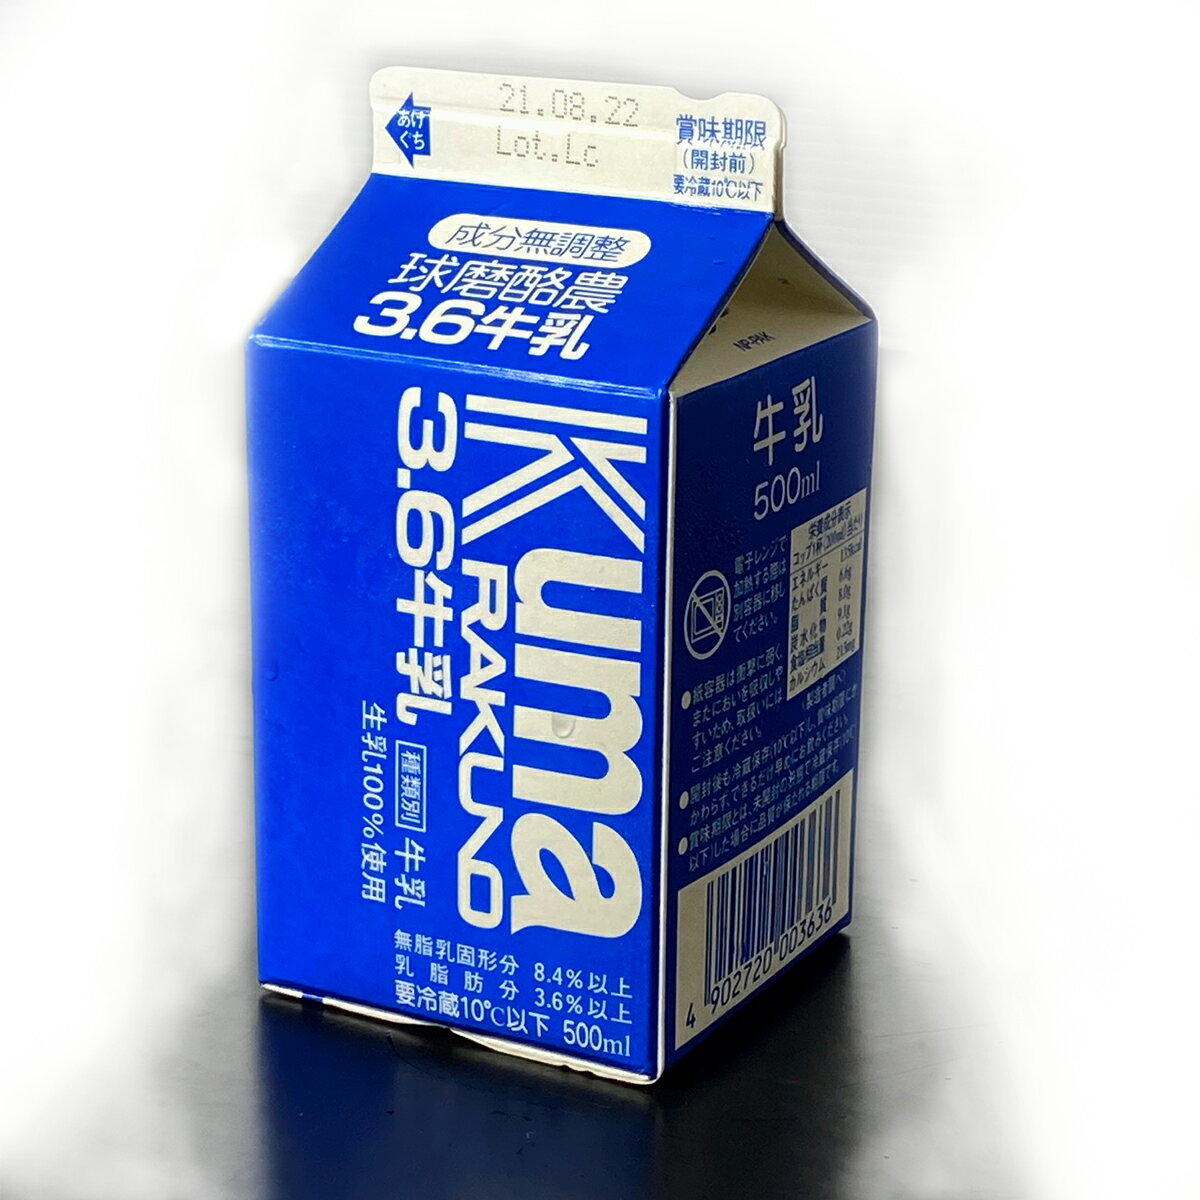 【球磨酪農牛乳500mL】熊本県 人吉市 球磨郡 新鮮牛乳